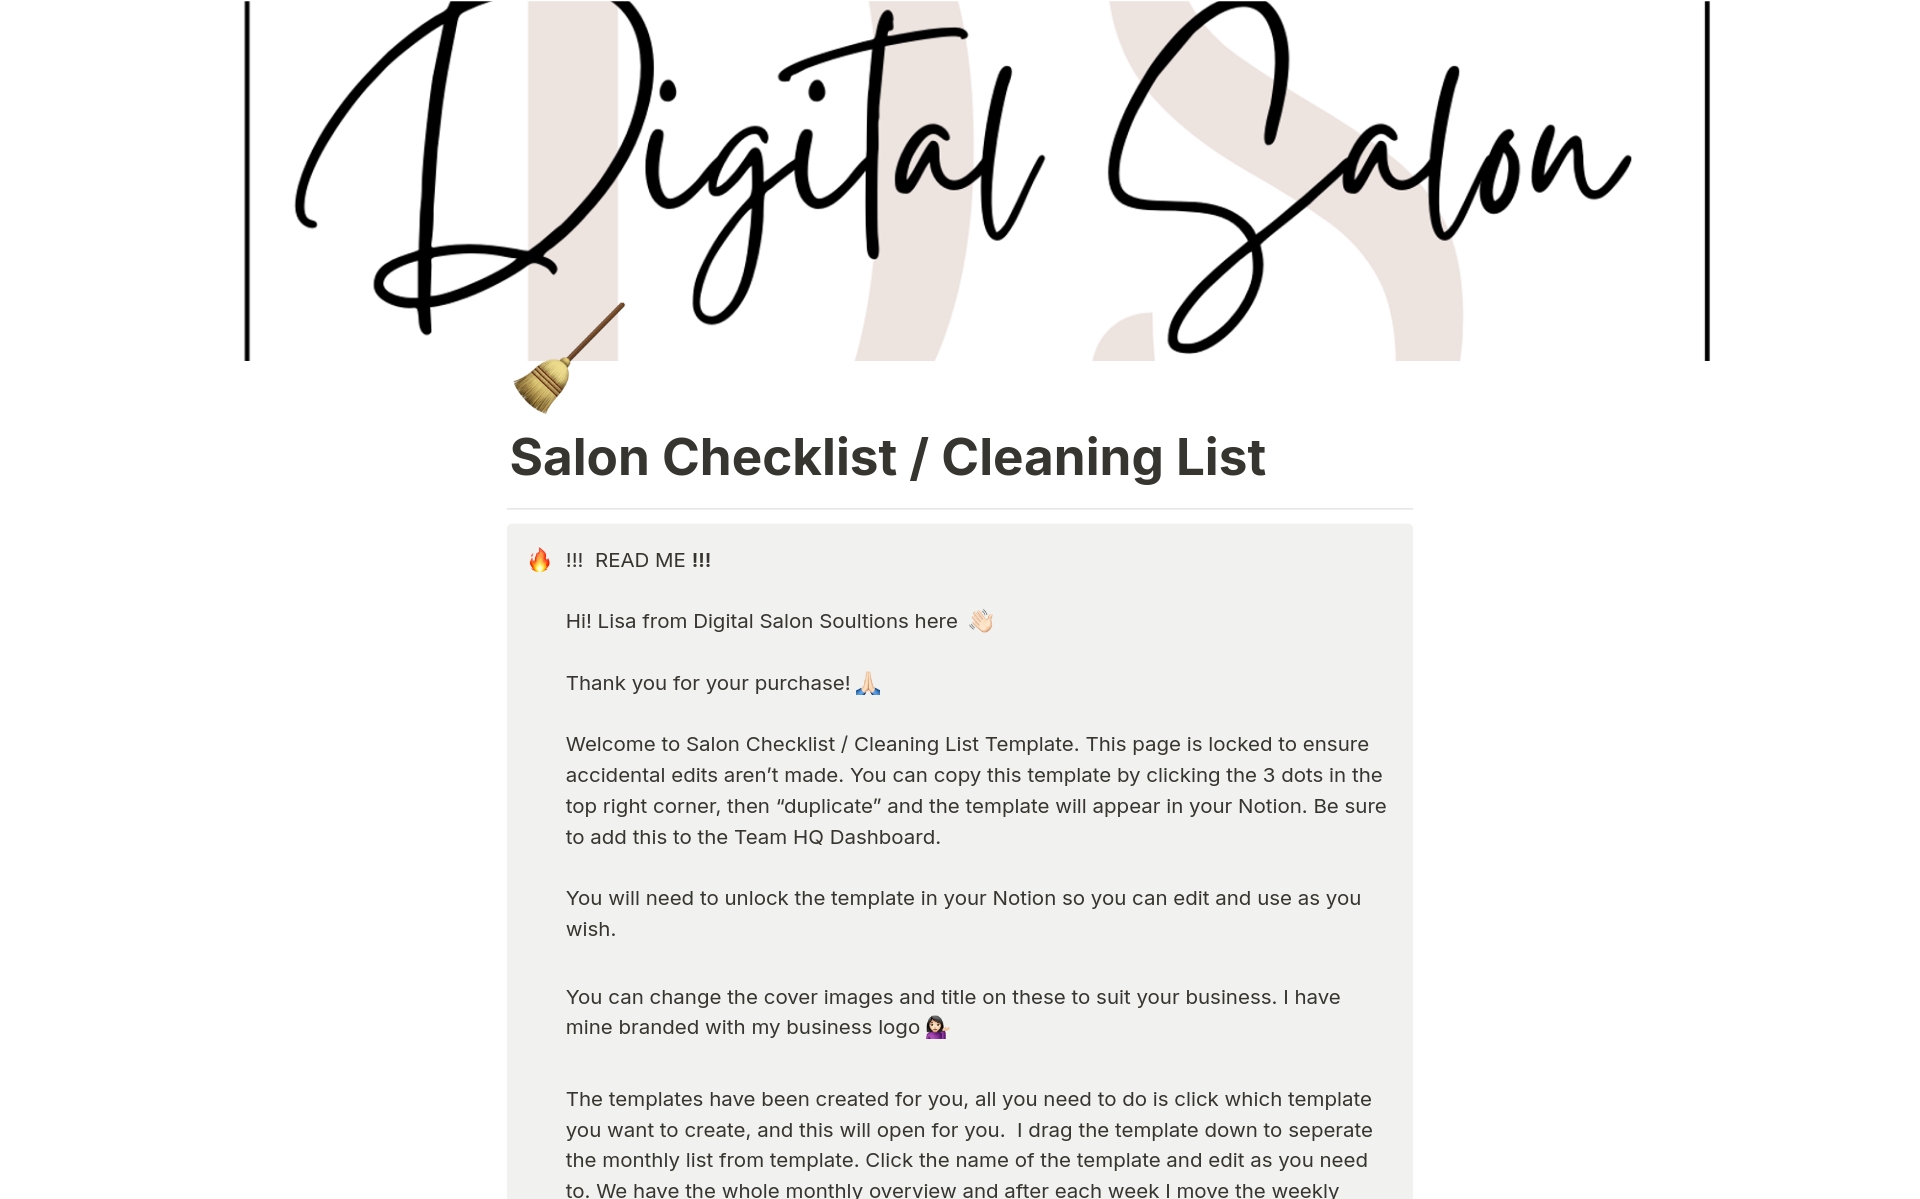 Uma prévia do modelo para Salon Checklist / Cleaning List